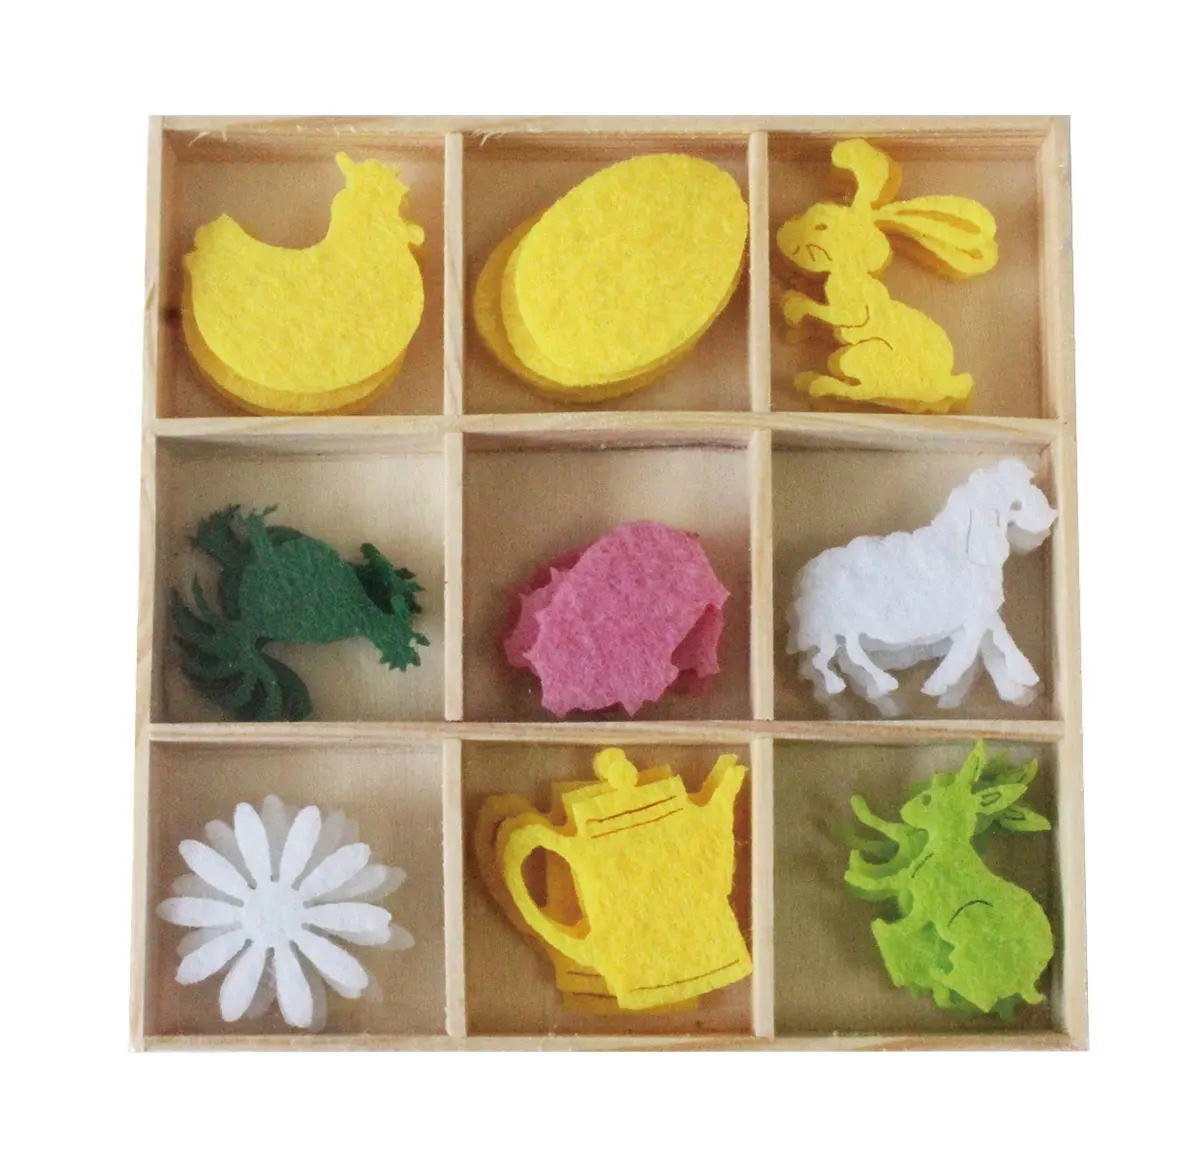 Kotak Kayu Desain Warna-warni 23472 36 Buah Bentuk Dekorasi Kerajinan Kain Wol dengan Hati Cinta Hewan Kupu-kupu